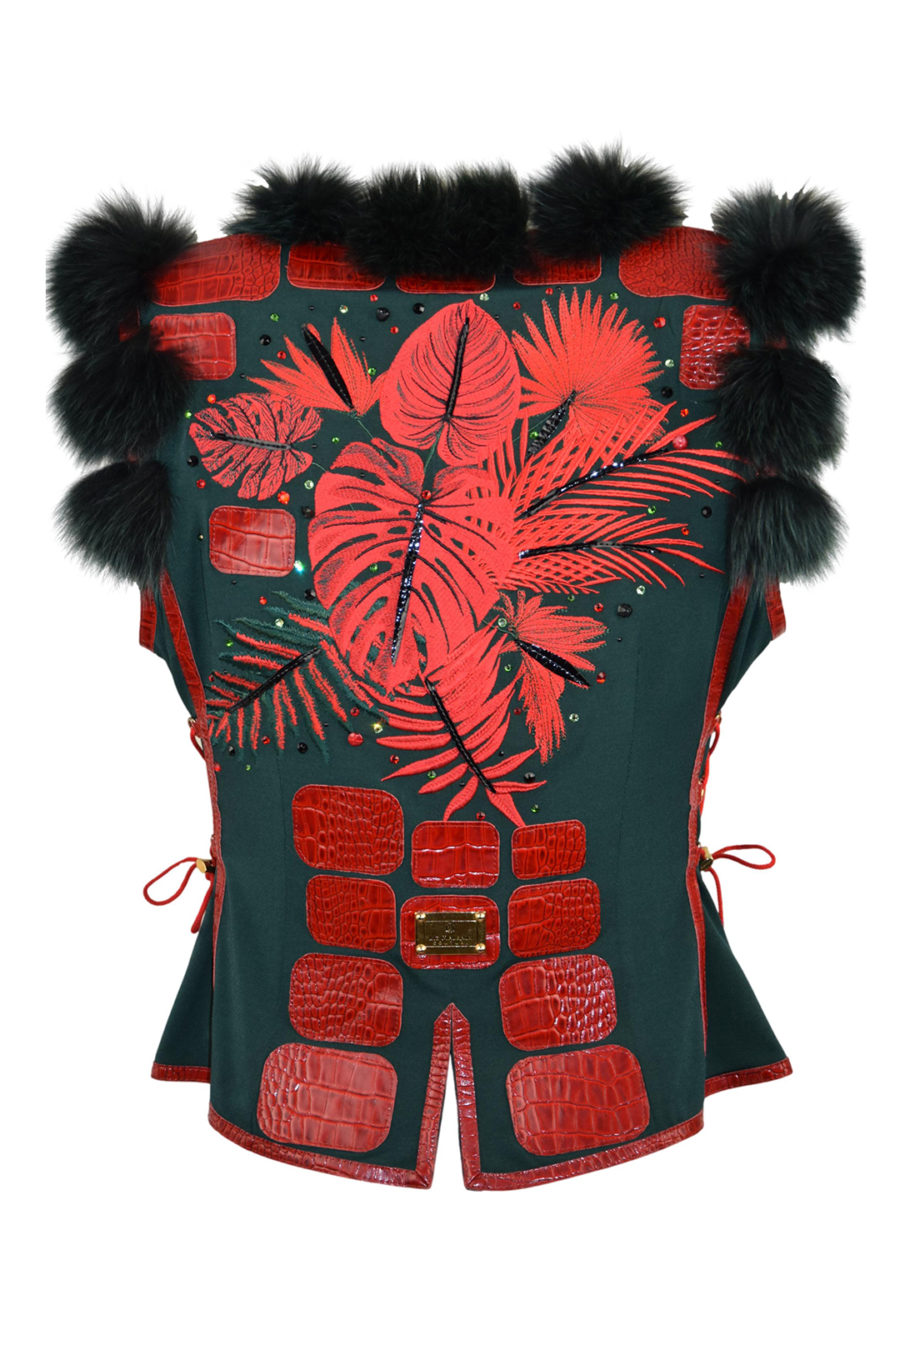 Fuchsweste mit "amazonas -embroidery", mit 162 handapplizierten Kristallen und Natursteinen, Lederpatches in Kroko-Optik, eingearbeiteter Sicherheitstasche,Multisize